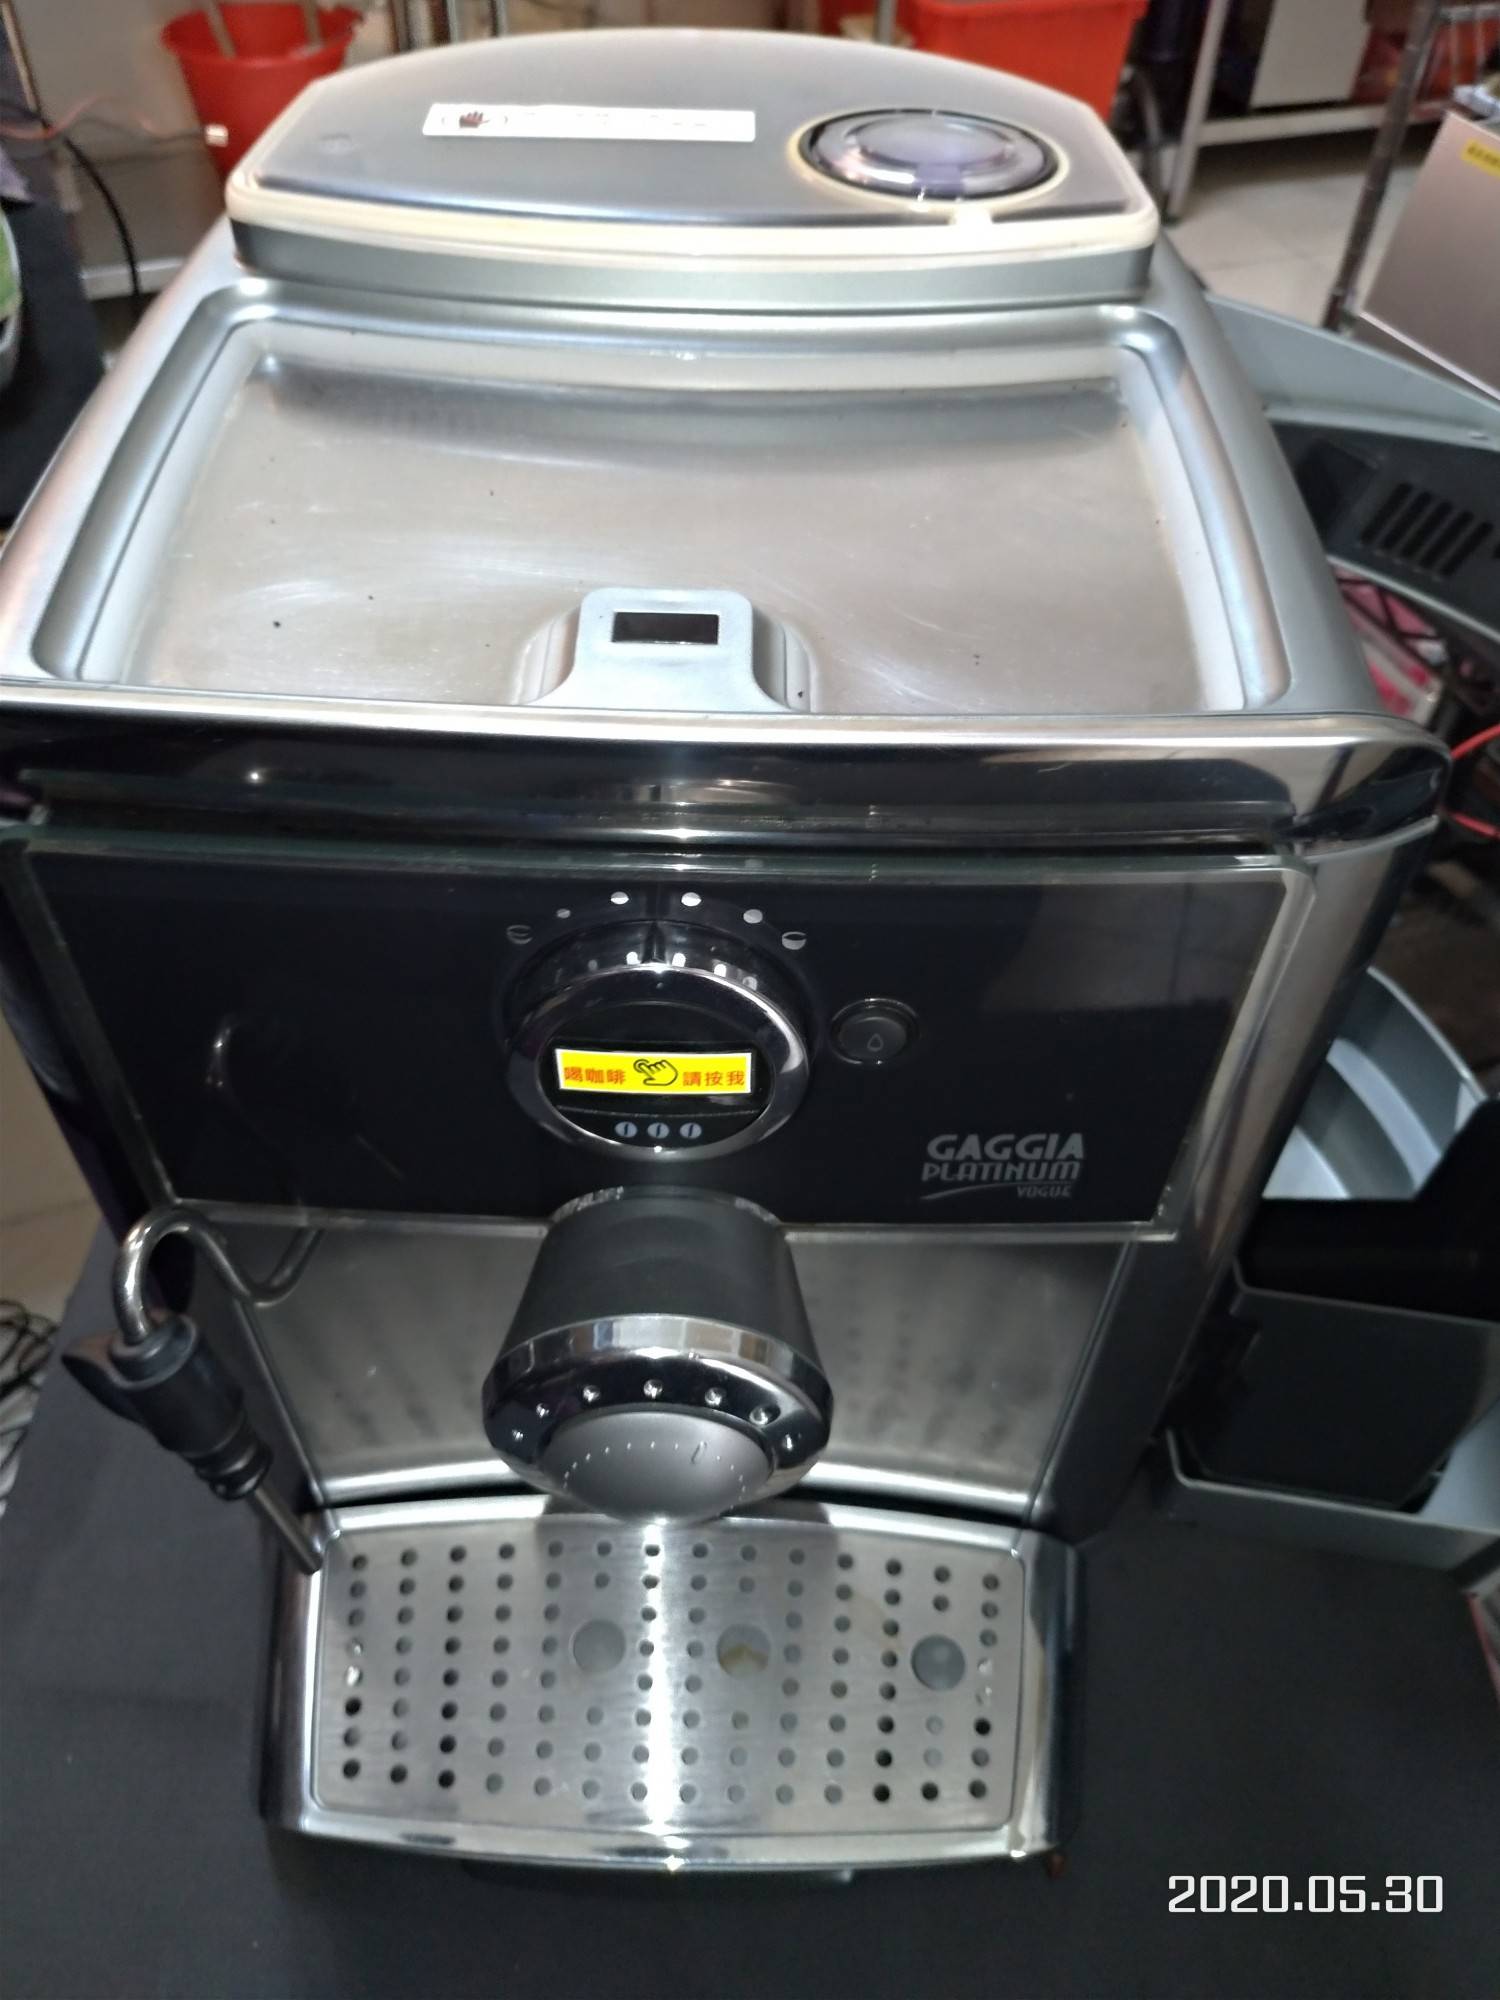 GAGGLA全自動咖啡機-saeco-trevl全自動咖啡機-中古機器-隨便賣-意者留言